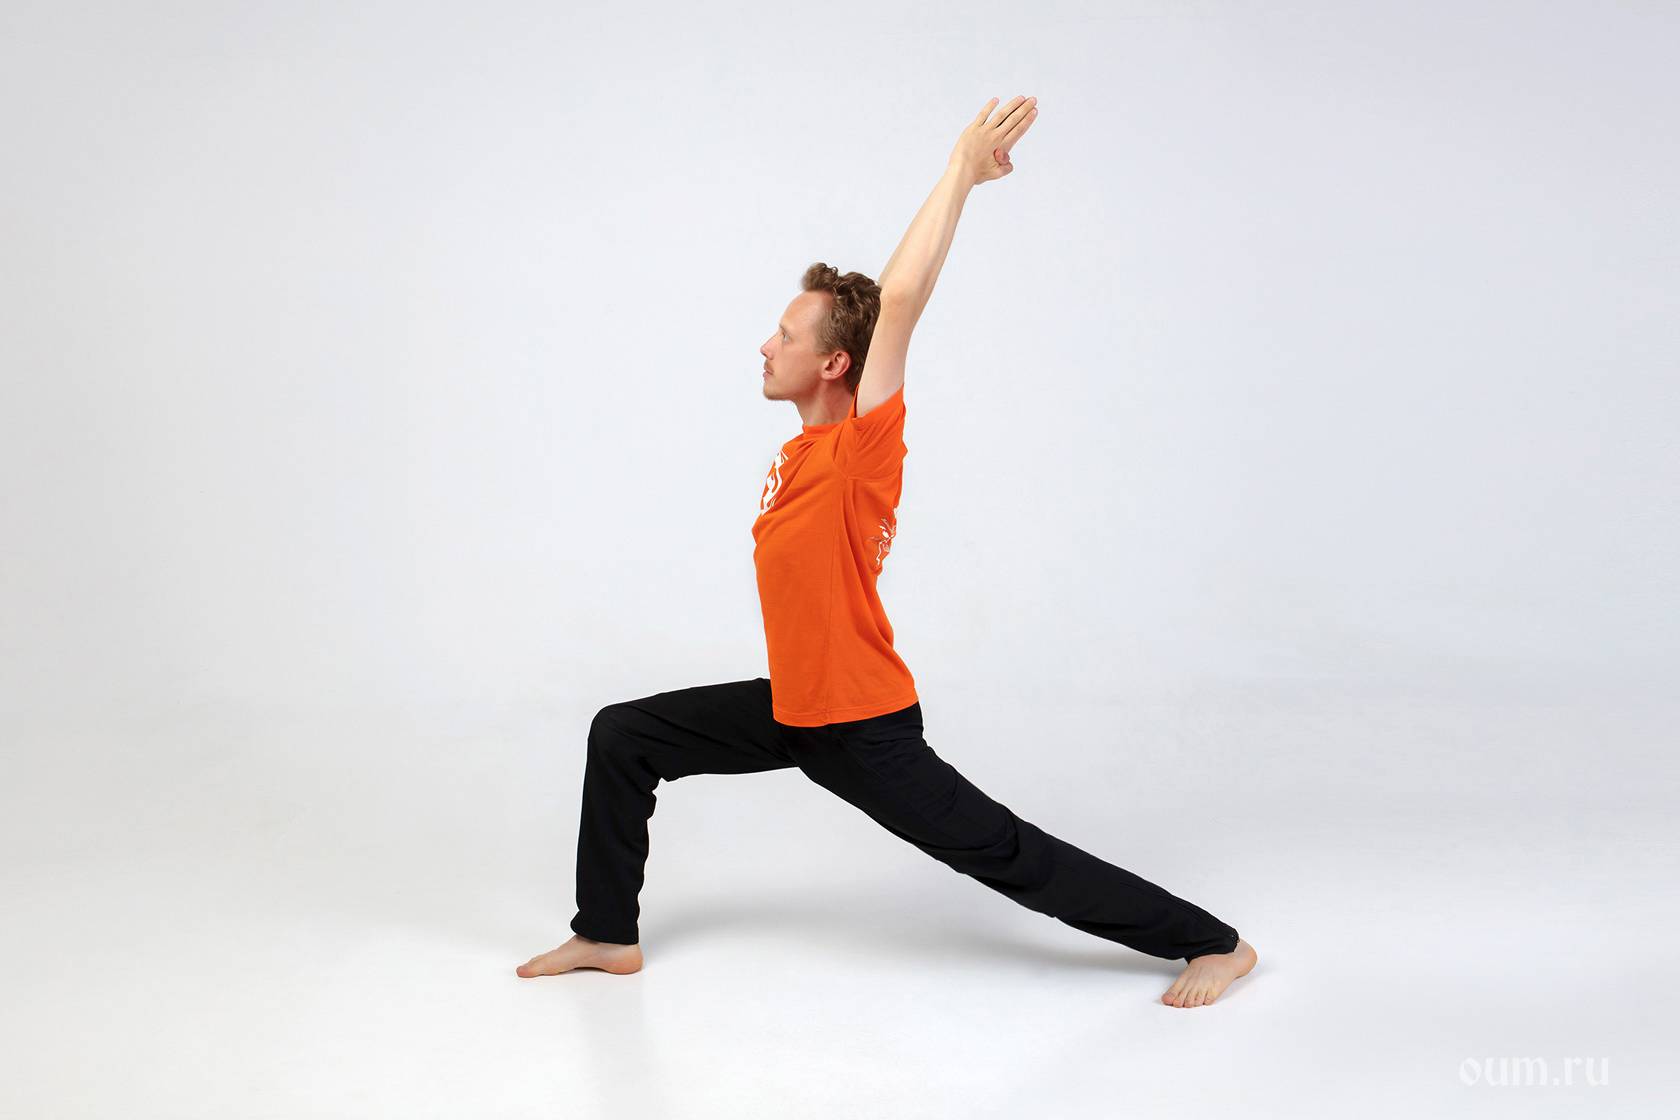 Вирабхадрасана 1 или поза воина 1 в йоге: техника выполнения, польза, противопоказания